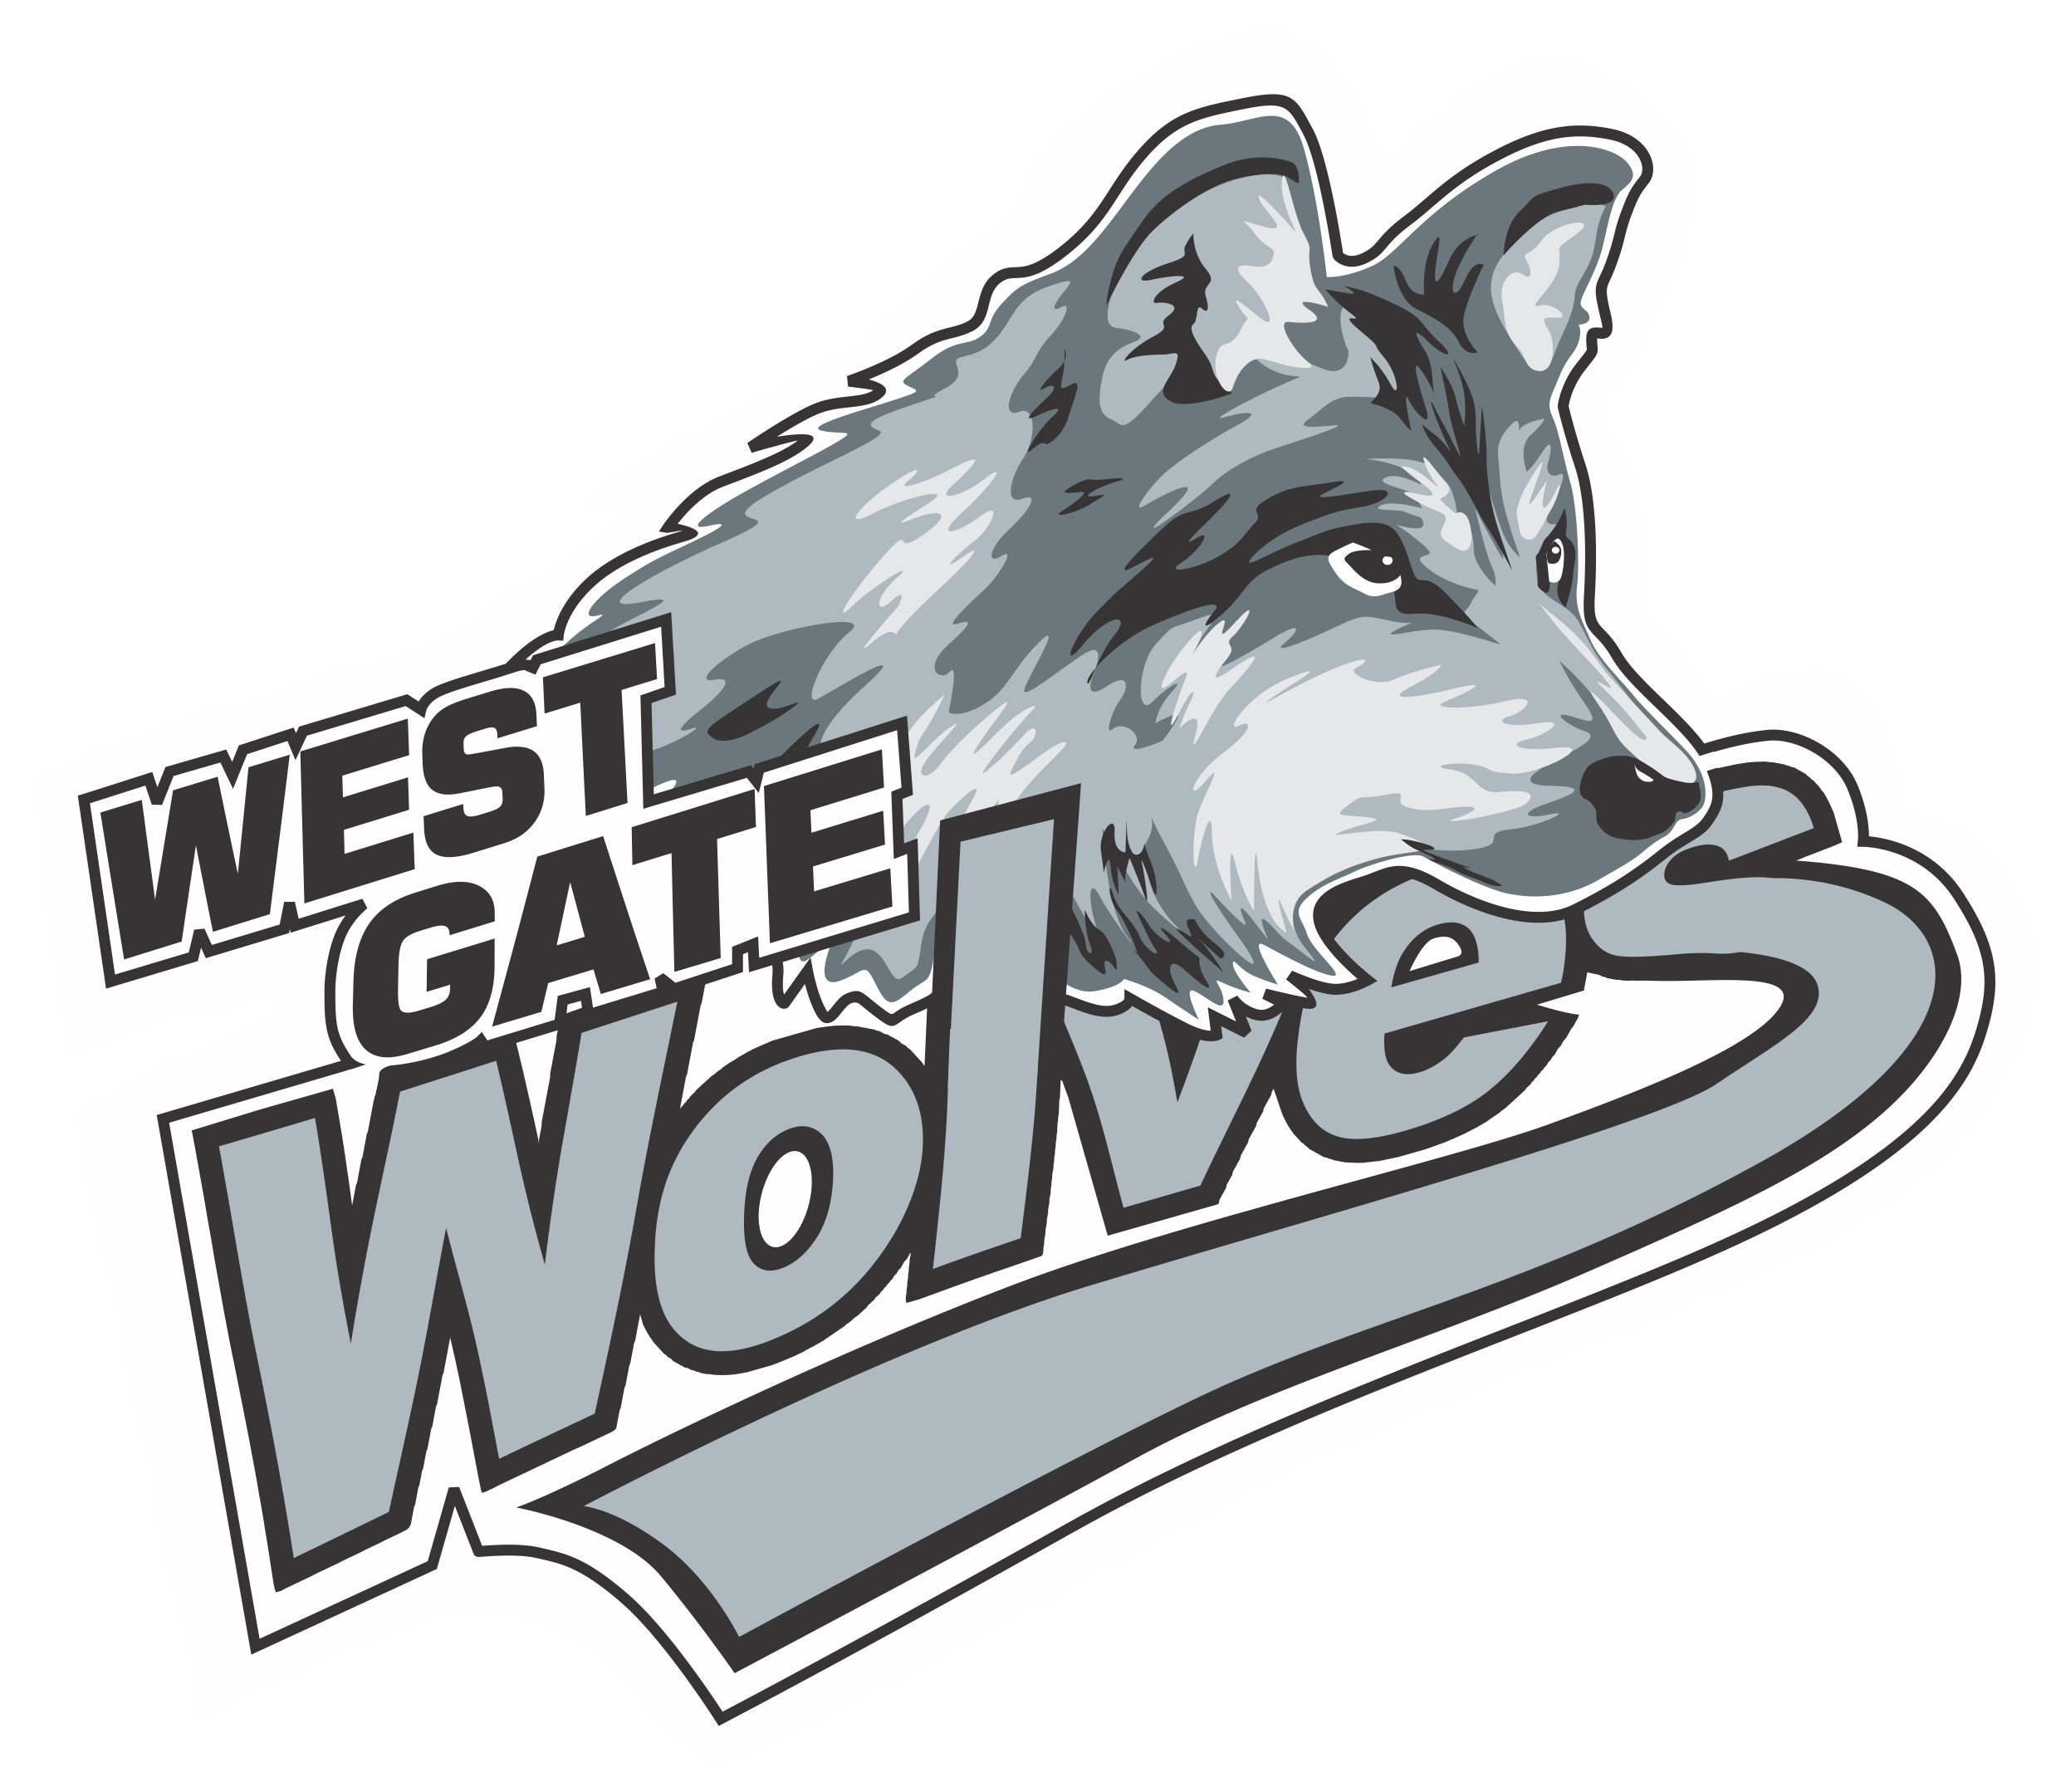 West Gate Public School footer logo